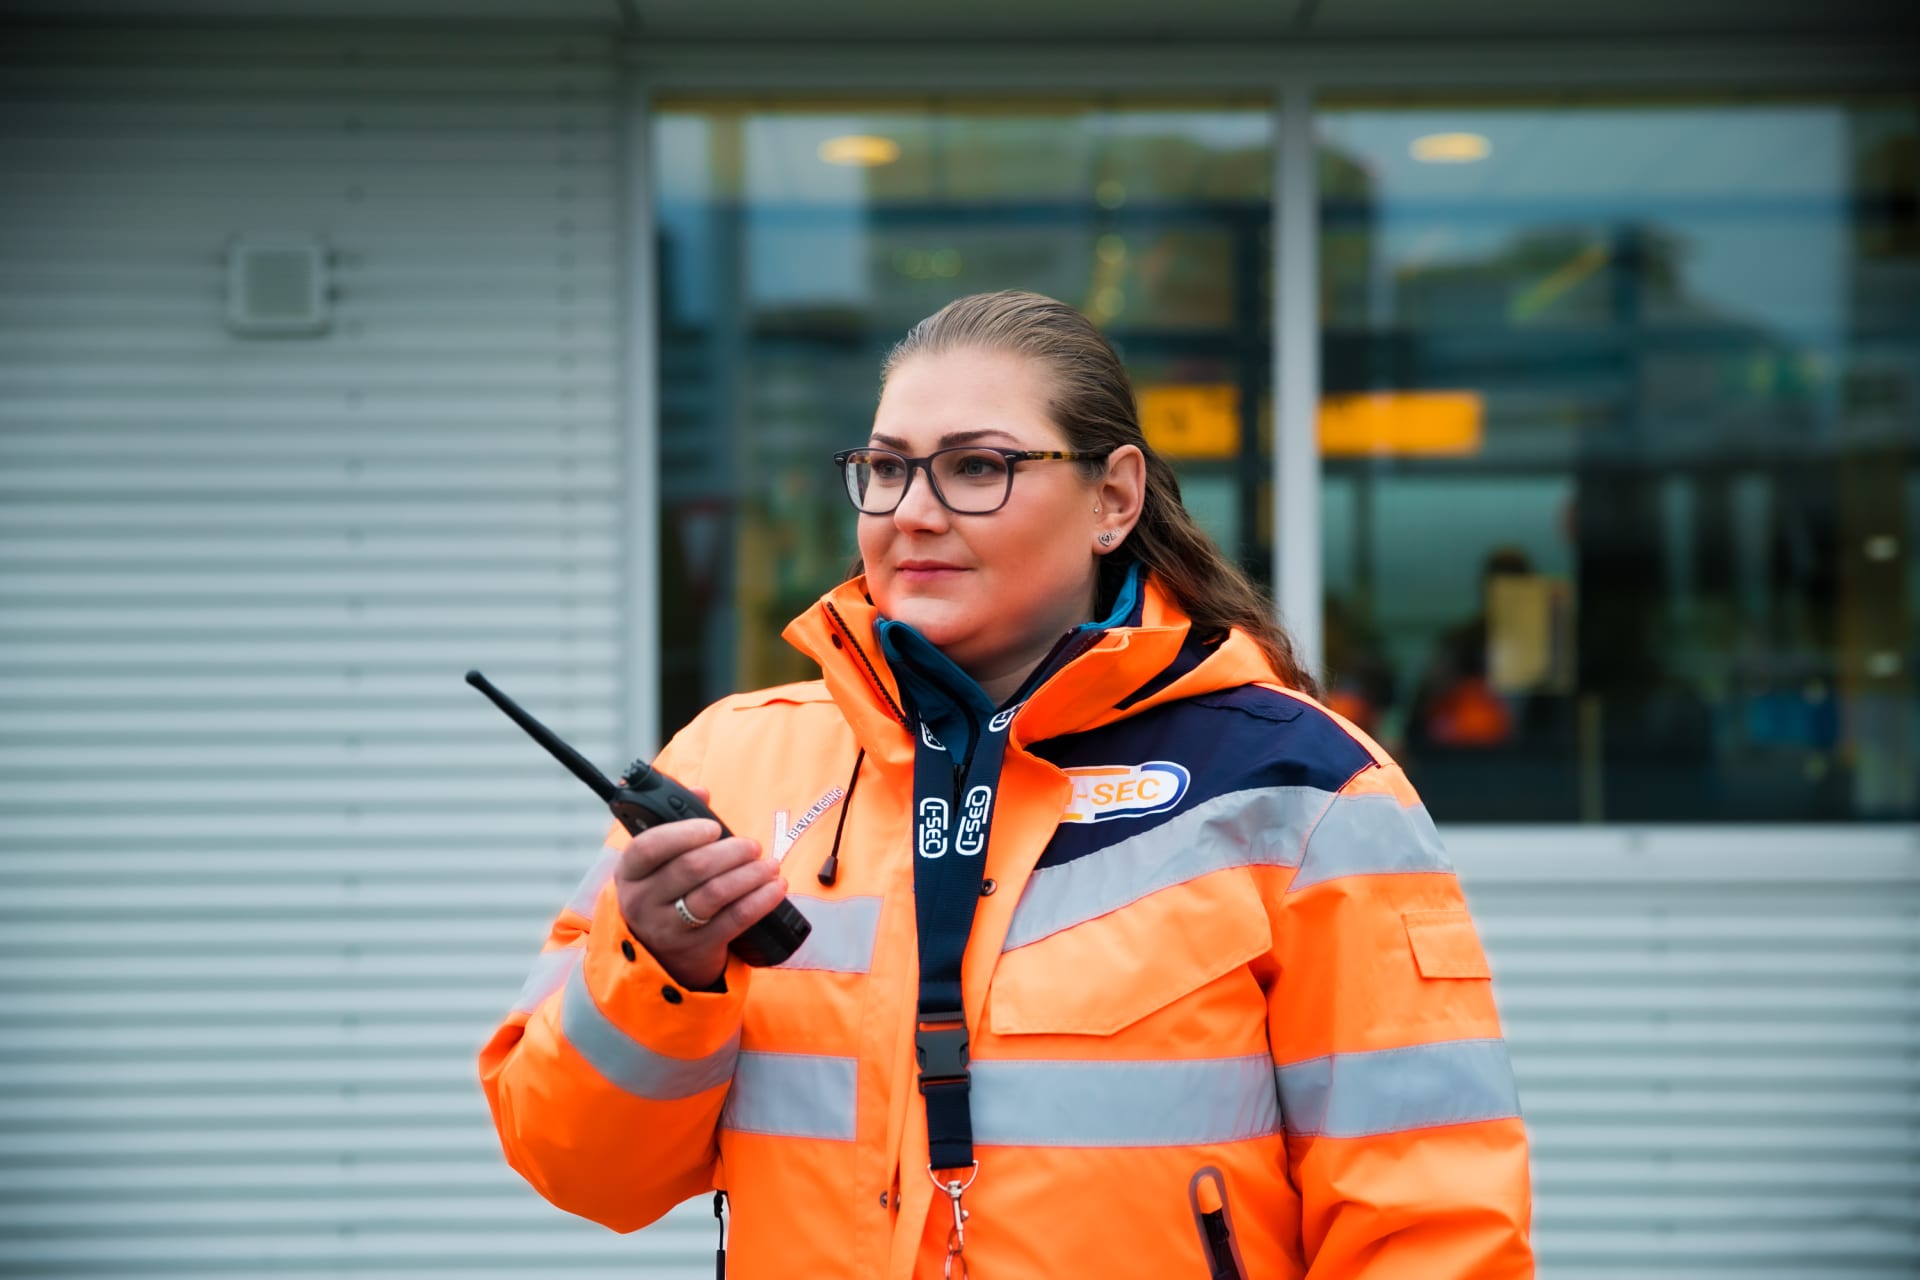 Vrouwelijke beveiligingsmedewerker met een oranje hi-vis jas communiceert via een walkietalkie buiten een kantoorgebouw.